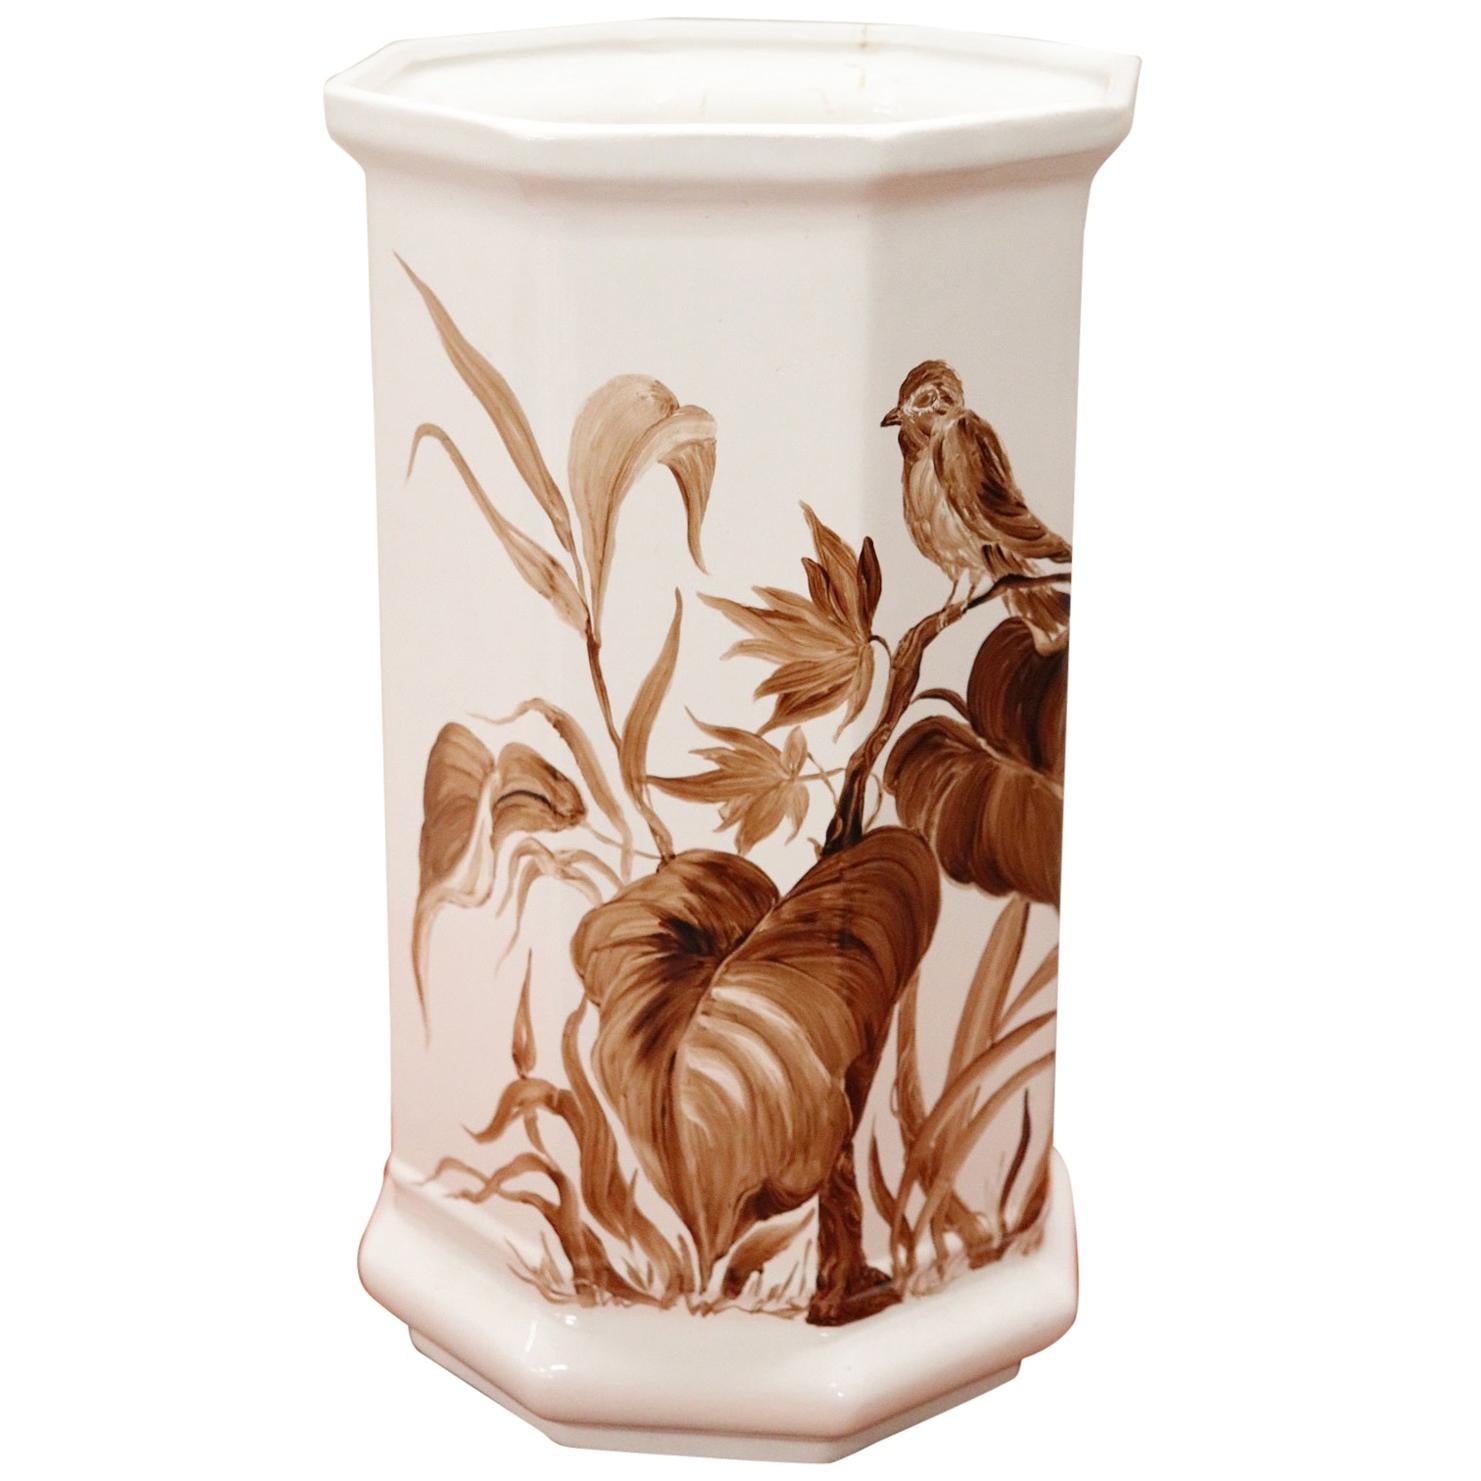 20th Century Italian Hand Painted Ceramic Vase